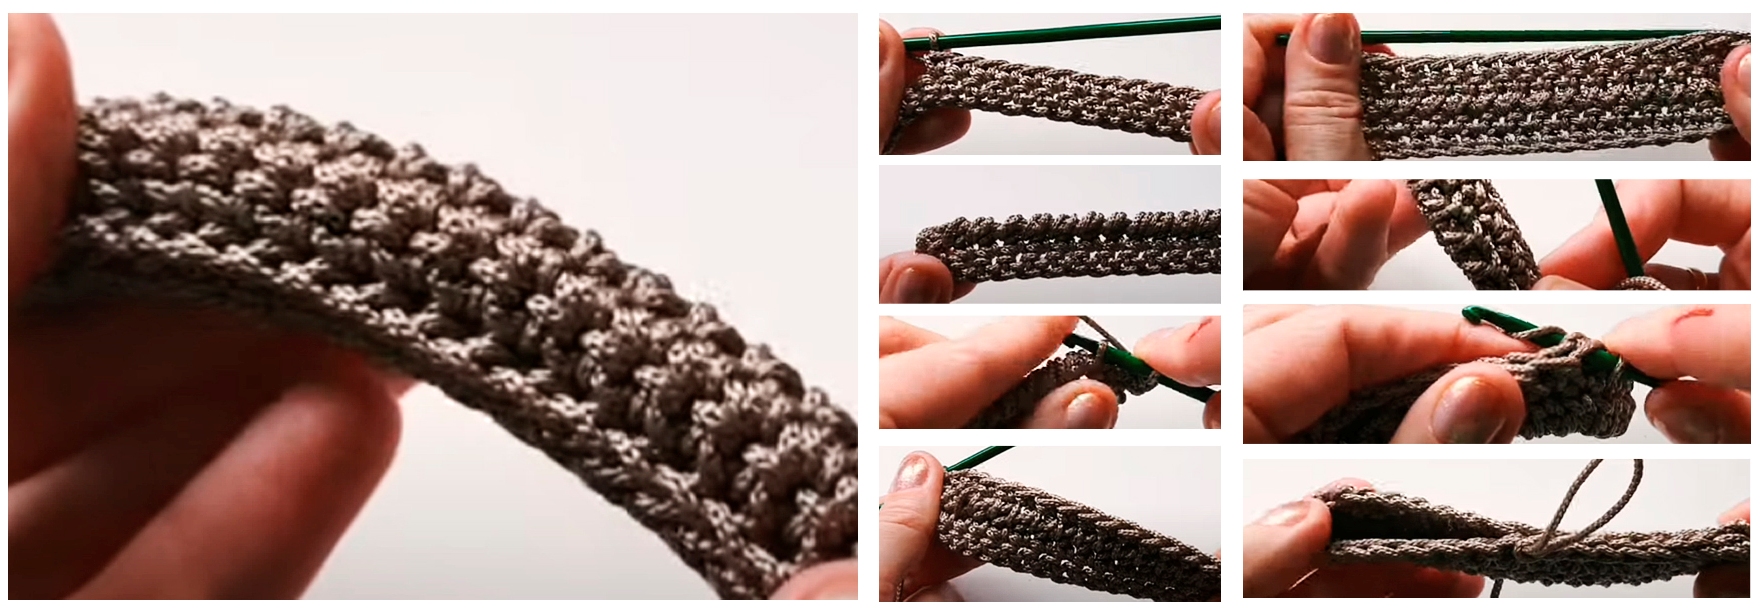 Приспособление-куколка для плетения шнура атр. H3251